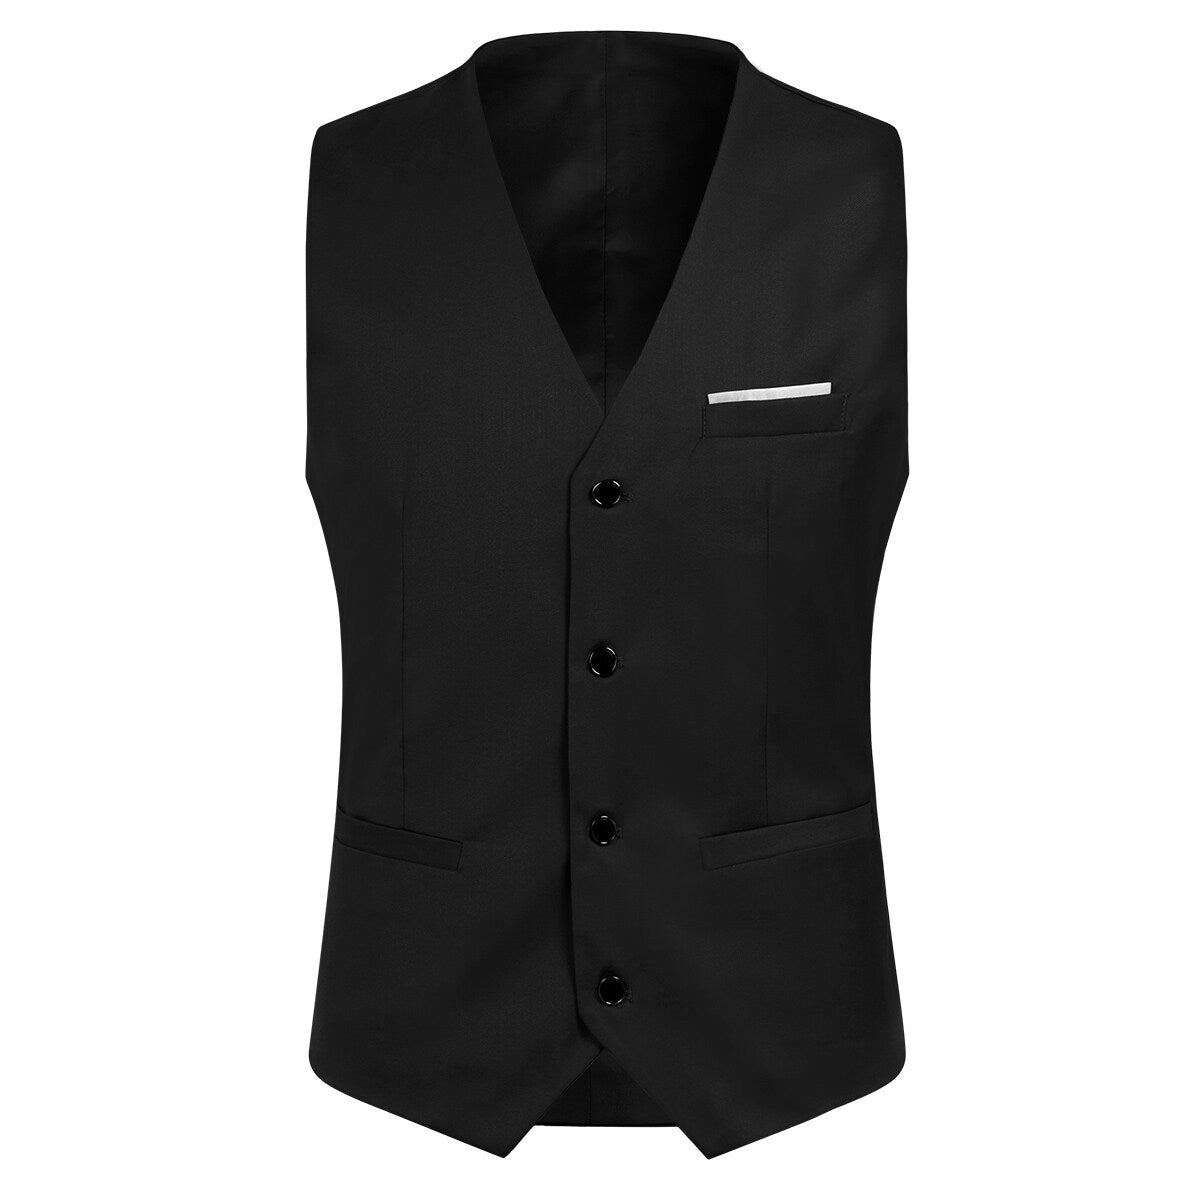 3-Piece Slim Fit One Button Fashion Black Suit